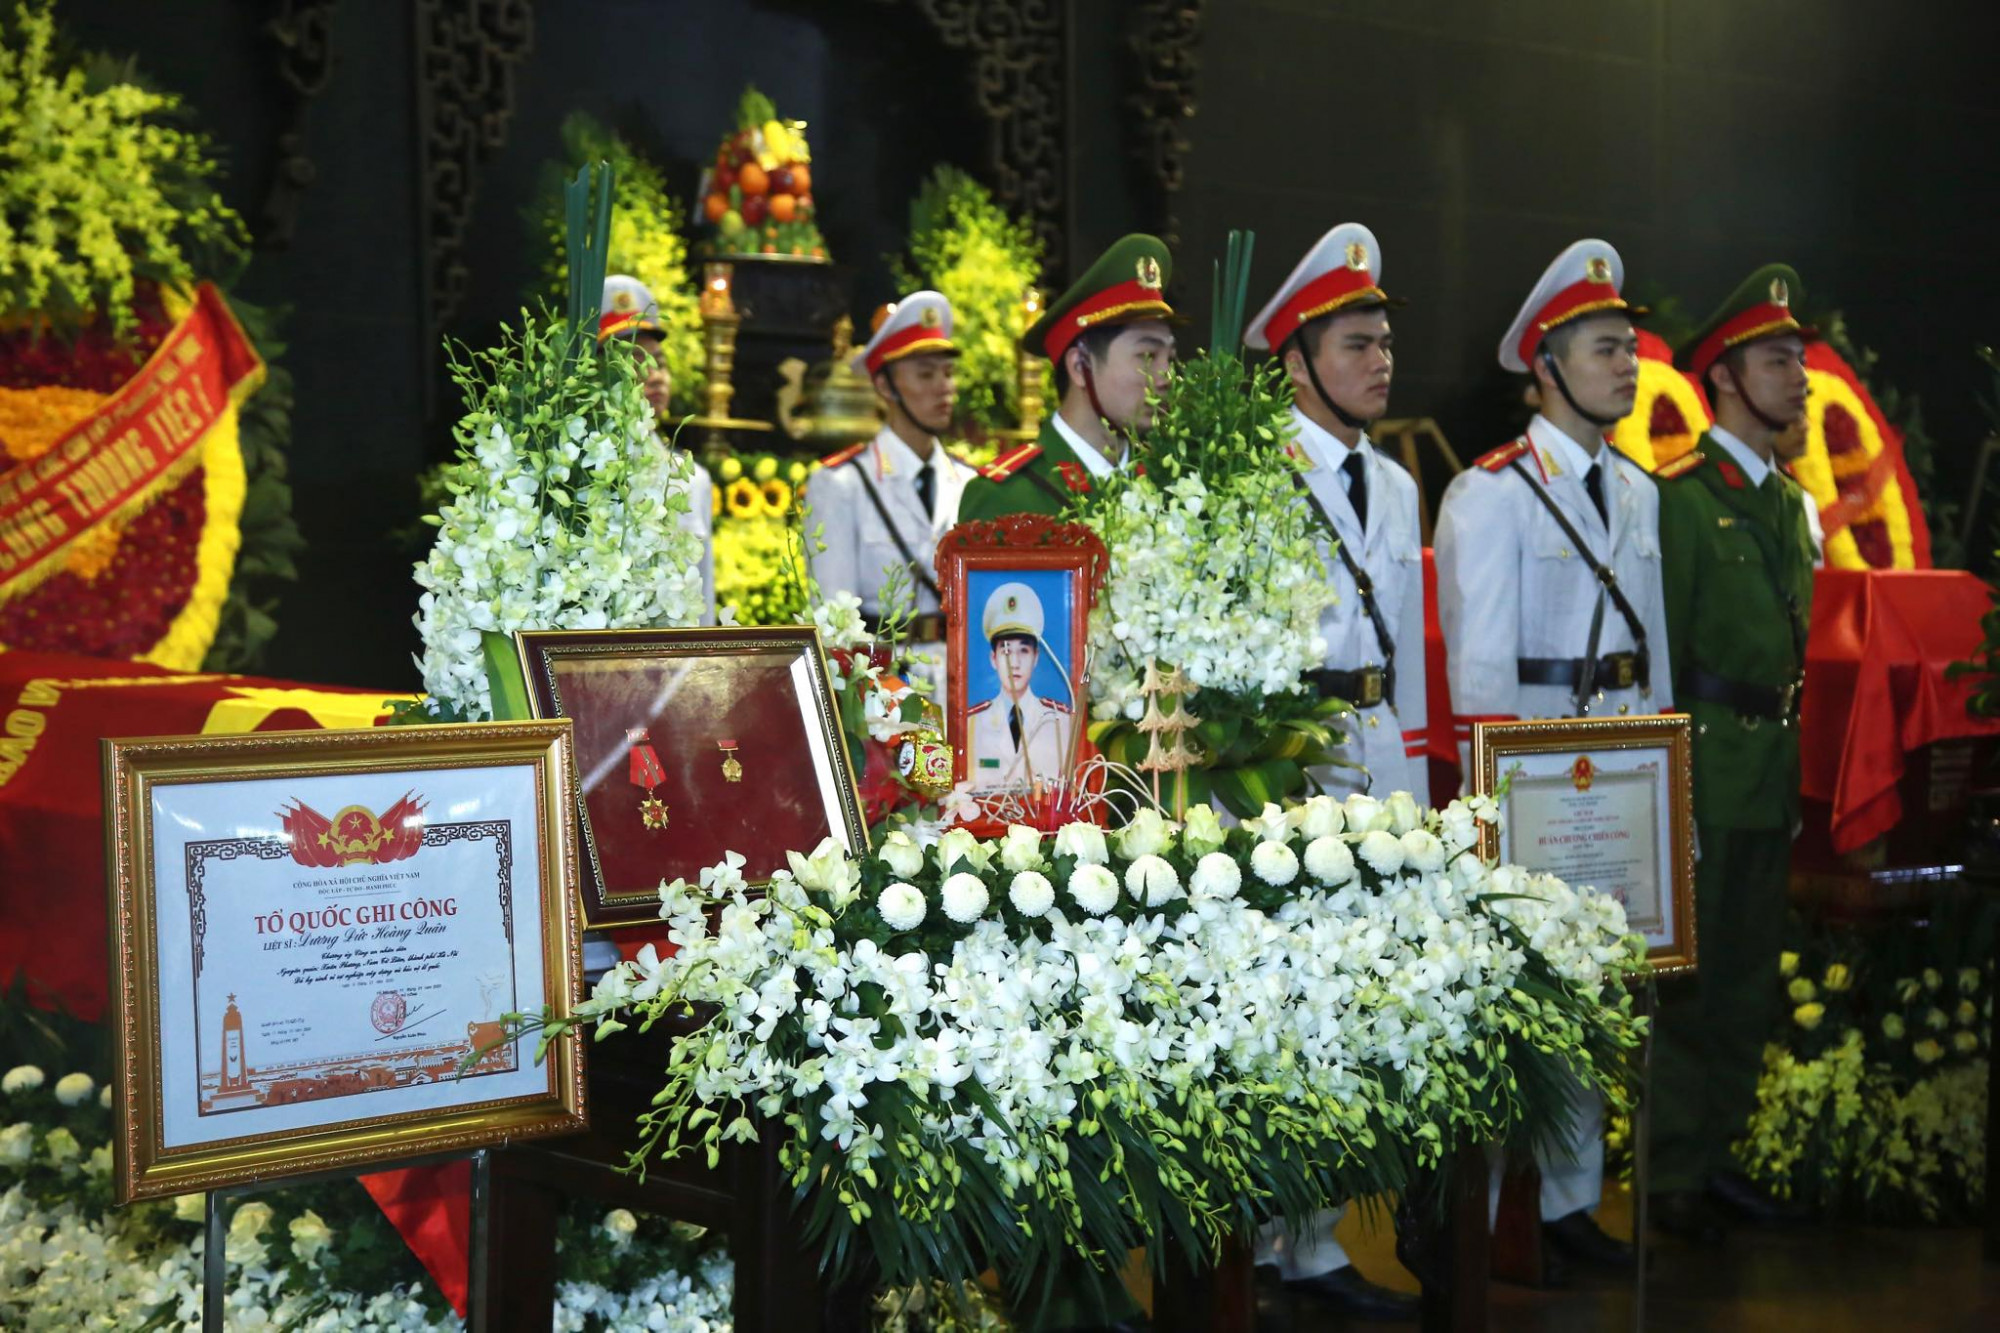 Tang lễ của 3 liệt sĩ được tổ chức theo nghi thức của lực lượng Công an nhân dân